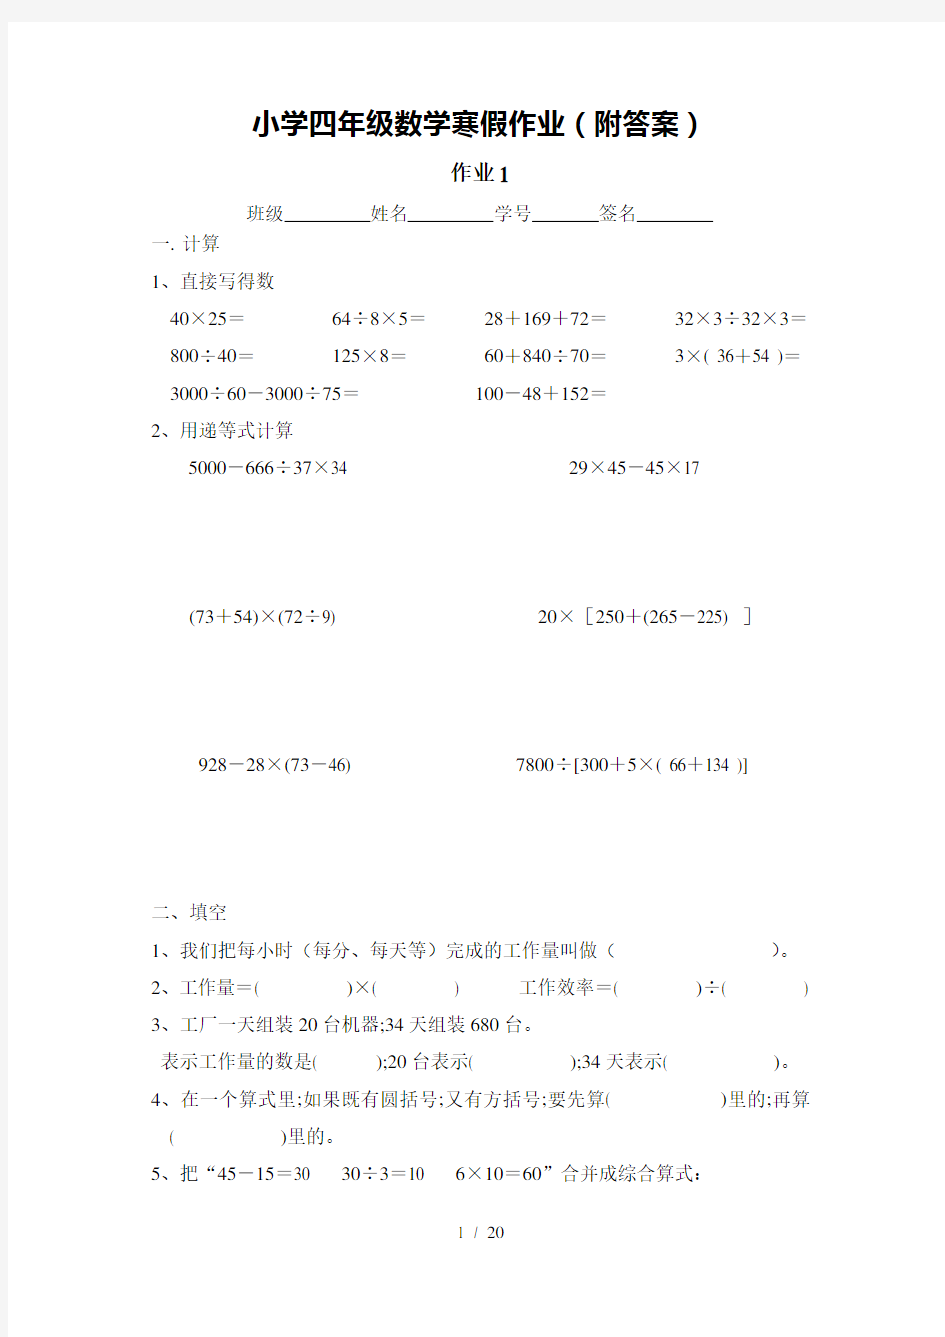 【小学数学】小学四年级数学寒假作业(附答案)